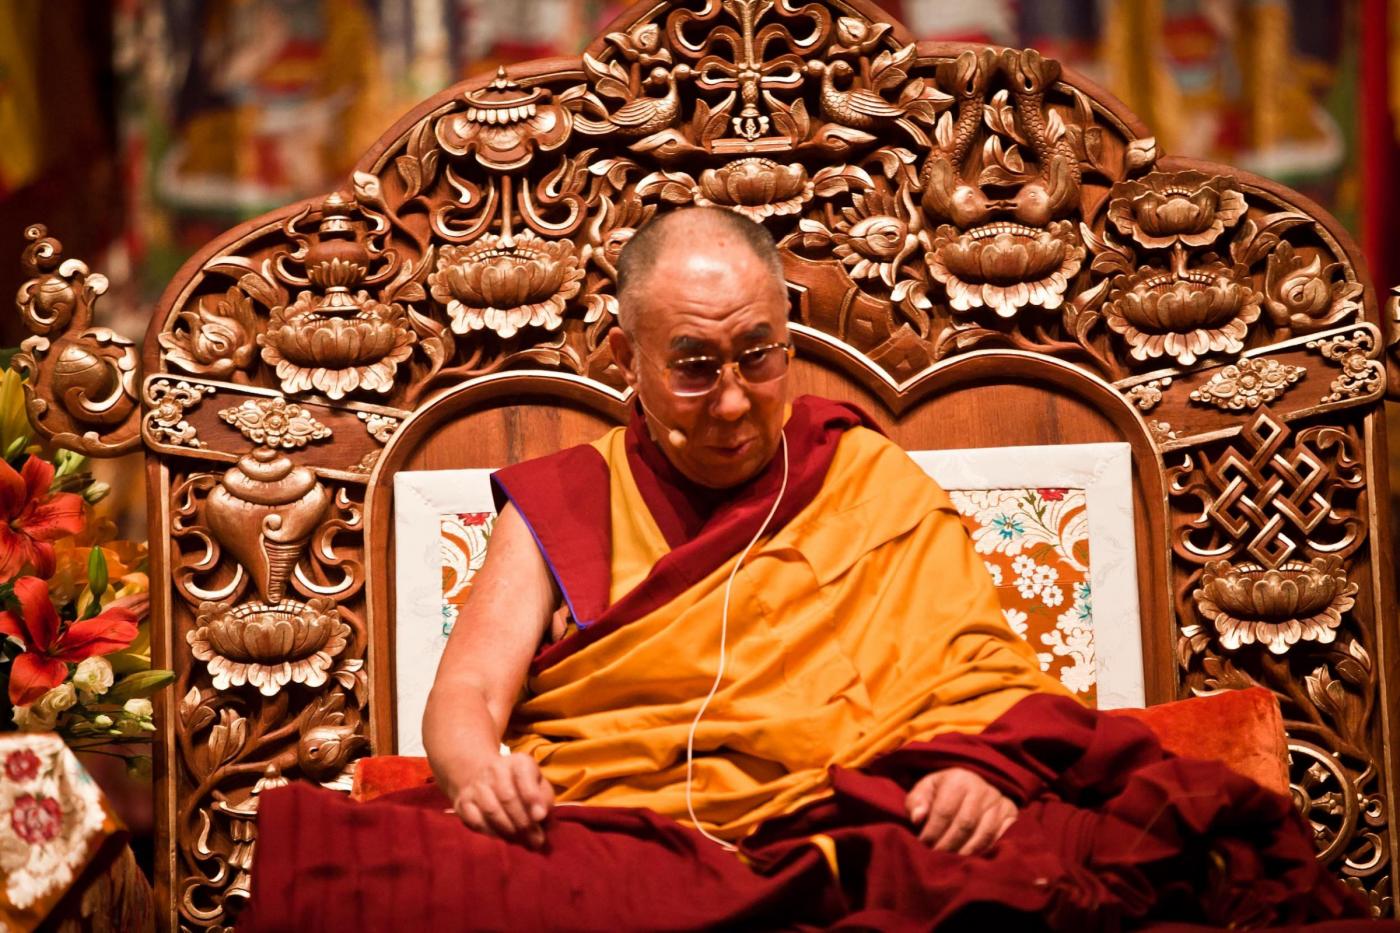 Dalai Lama in vista al Forum d'Assago02